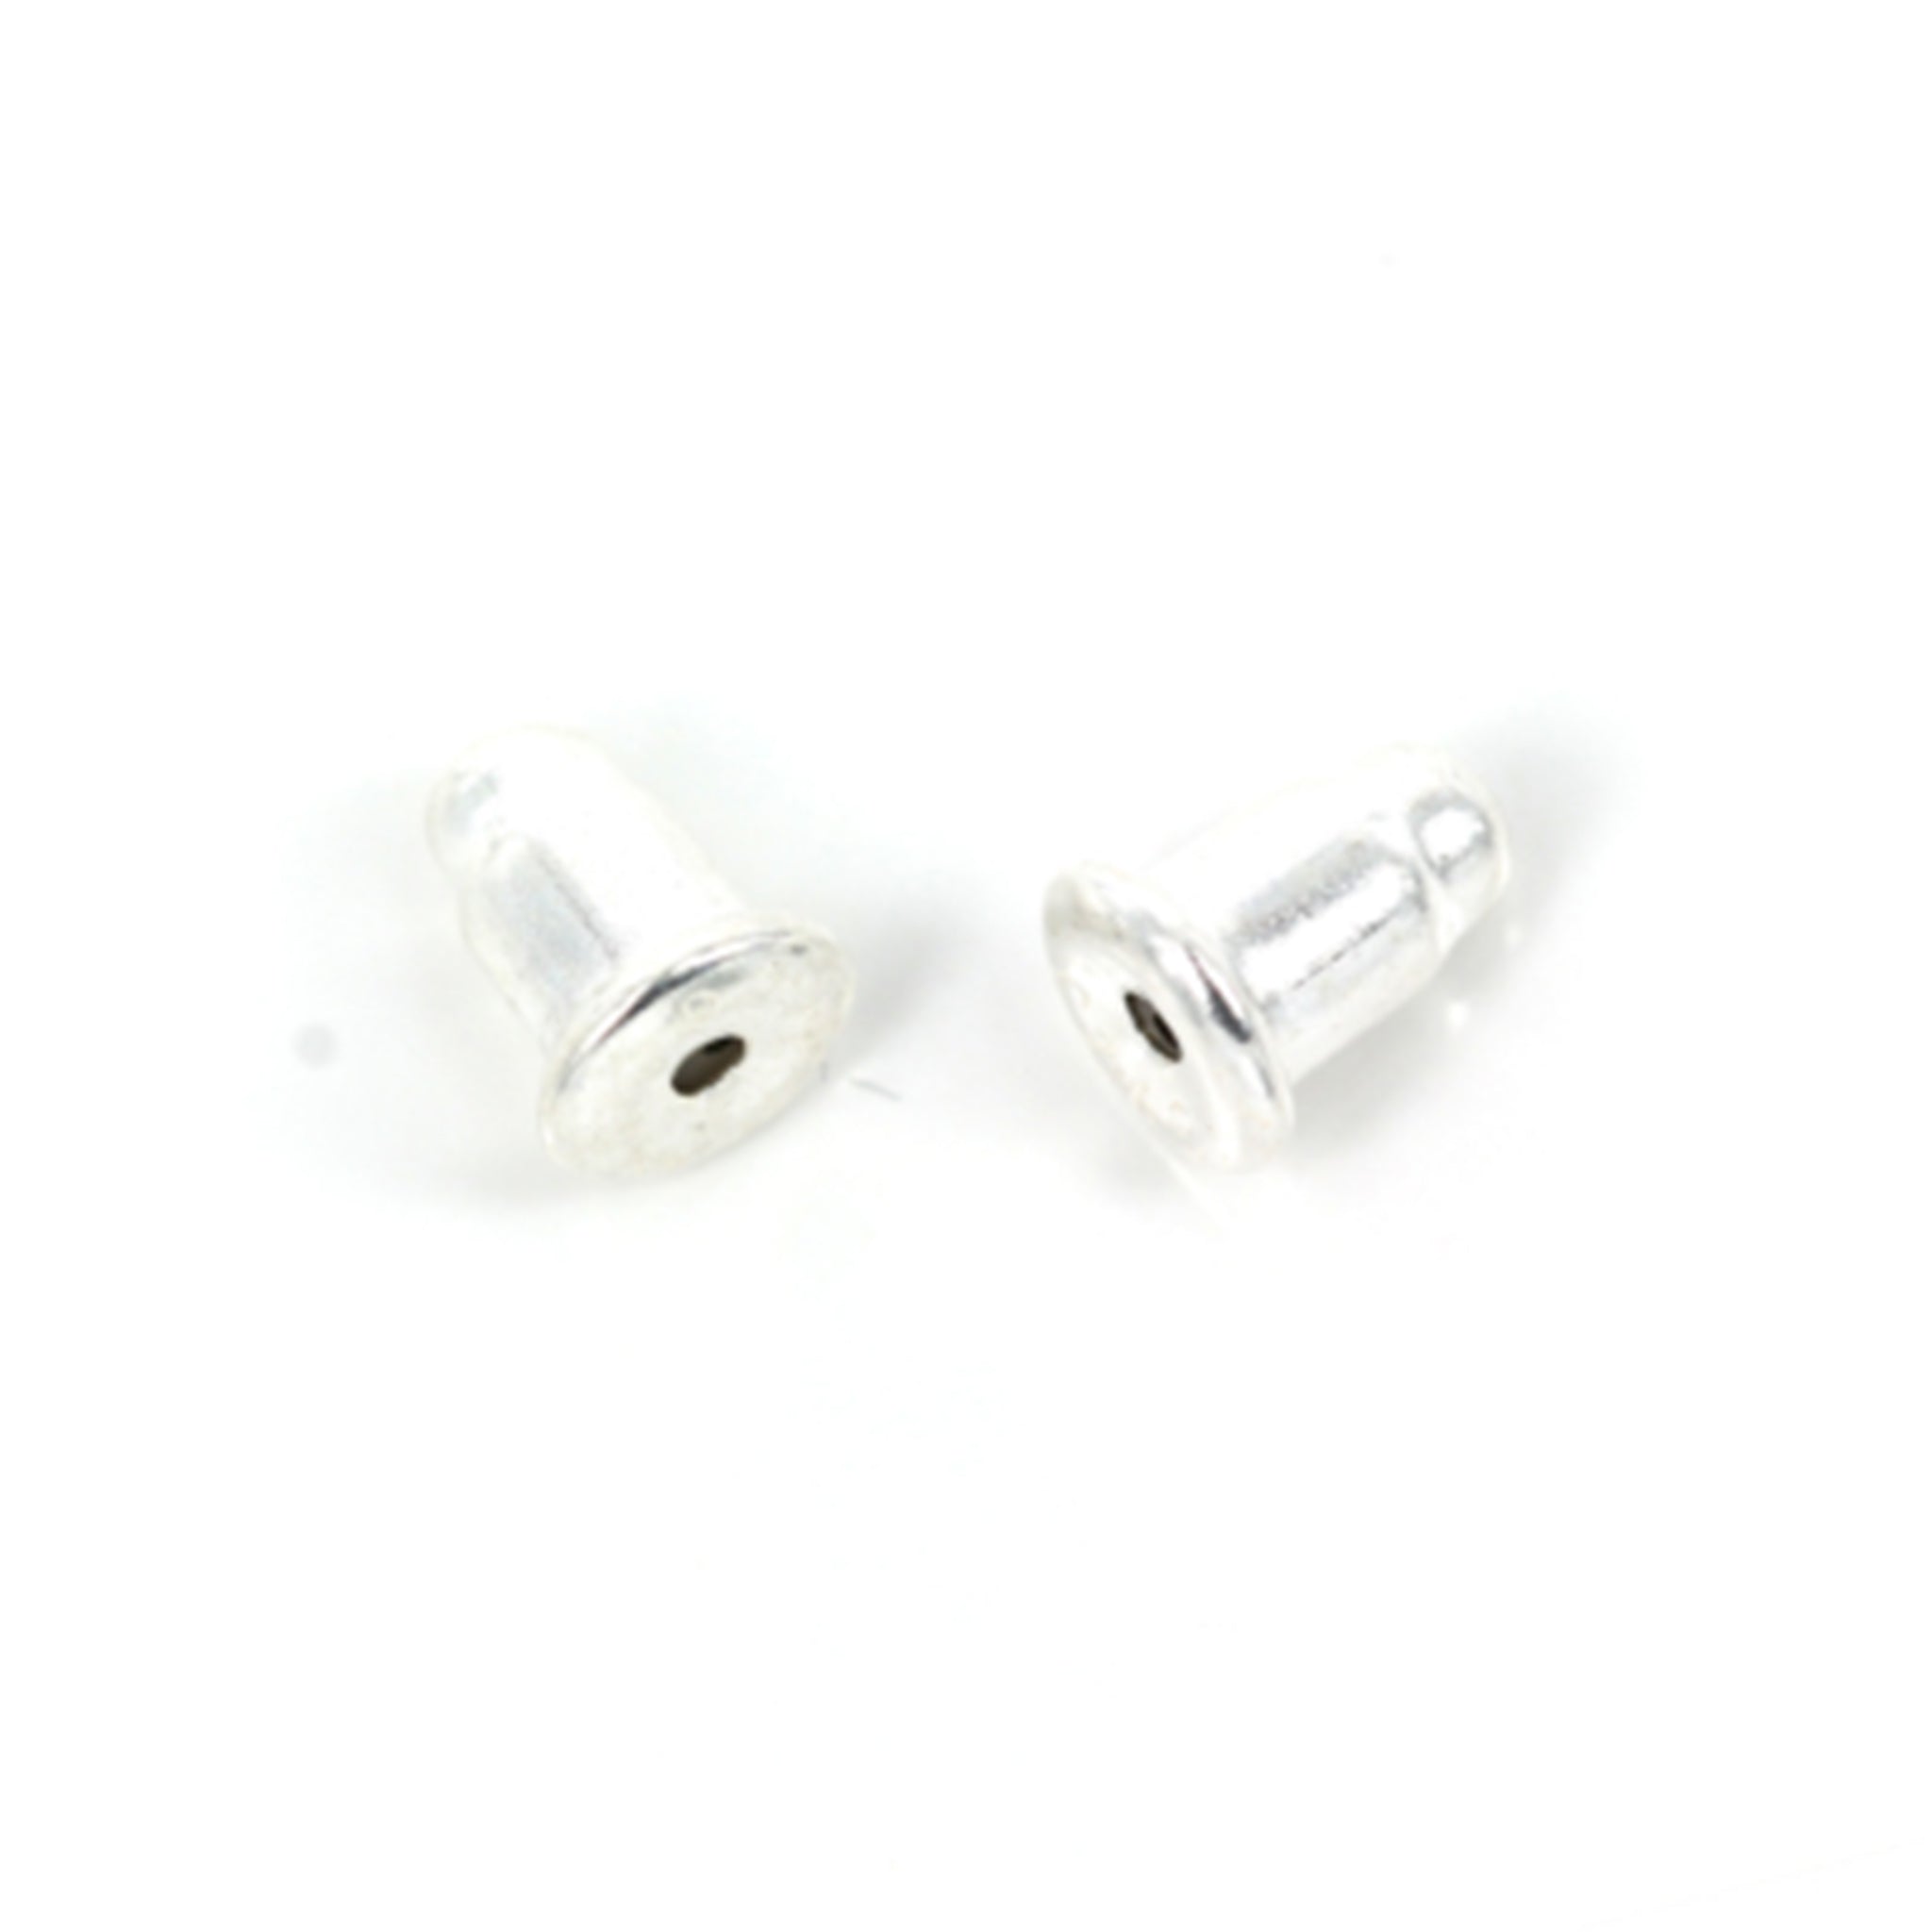 Ear Nuts/Ear Backs in Sterling Silver 4.3x5mm